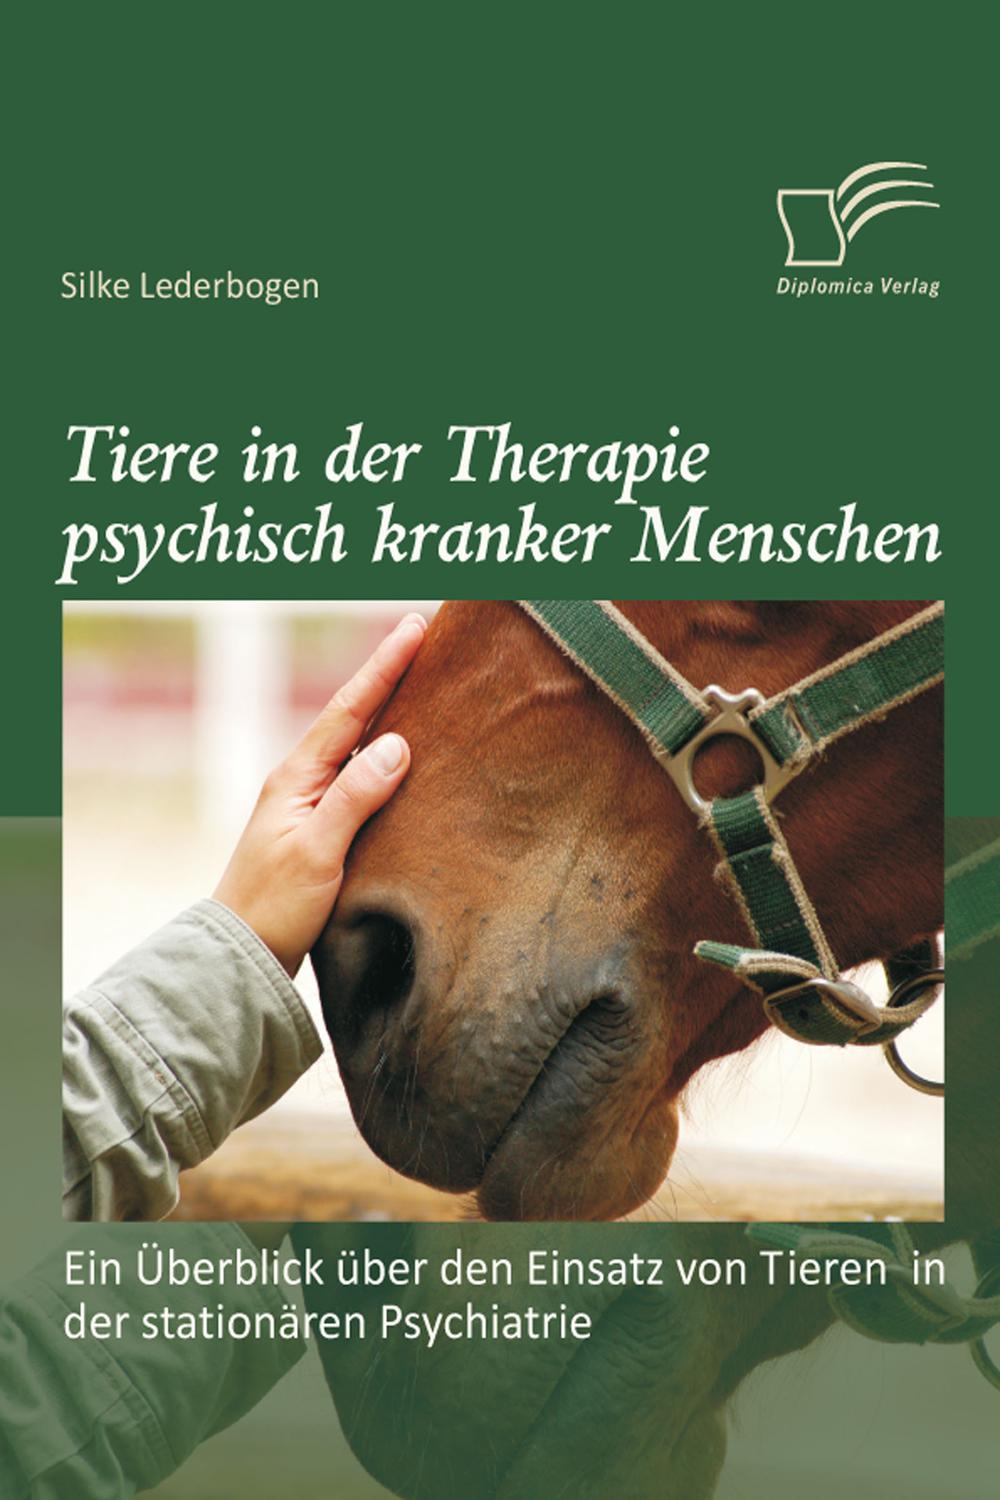 Tiere in der Therapie psychisch kranker Menschen: Ein Überblick über den Einsatz von Tieren in der stationären Psychiatrie - Silke Lederbogen